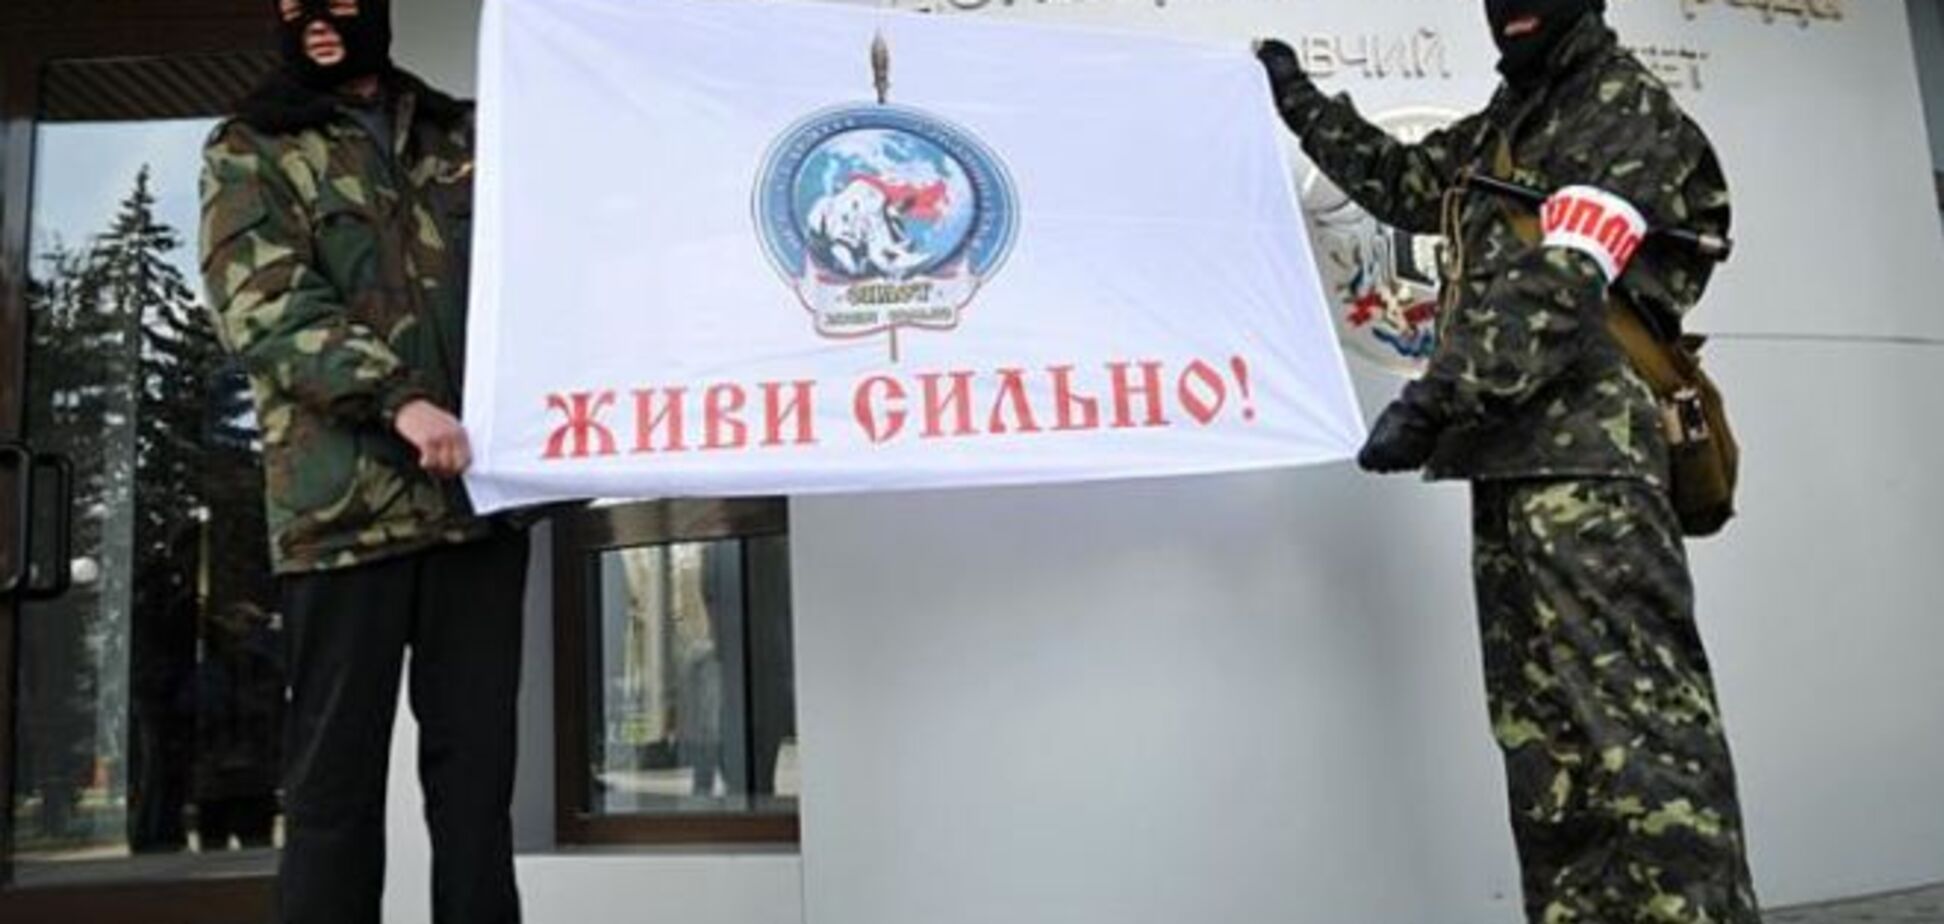 'Ватопед': бойовий шлях 'особистої гвардії' ватажка 'ДНР'